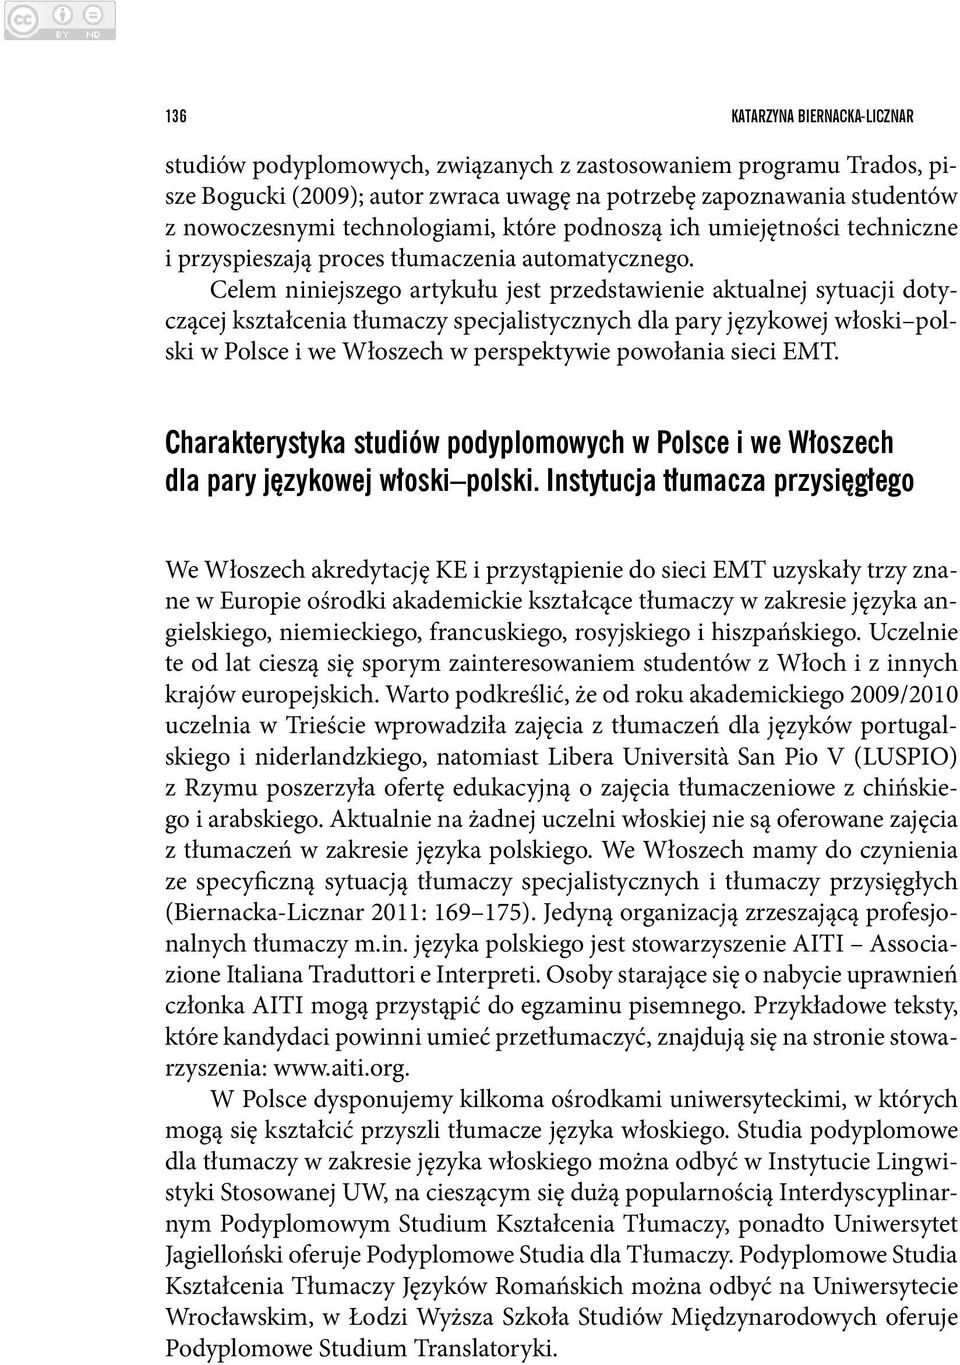 Celem niniejszego artykułu jest przedstawienie aktualnej sytuacji dotyczącej kształcenia tłumaczy specjalistycznych dla pary językowej włoski polski w Polsce i we Włoszech w perspektywie powołania